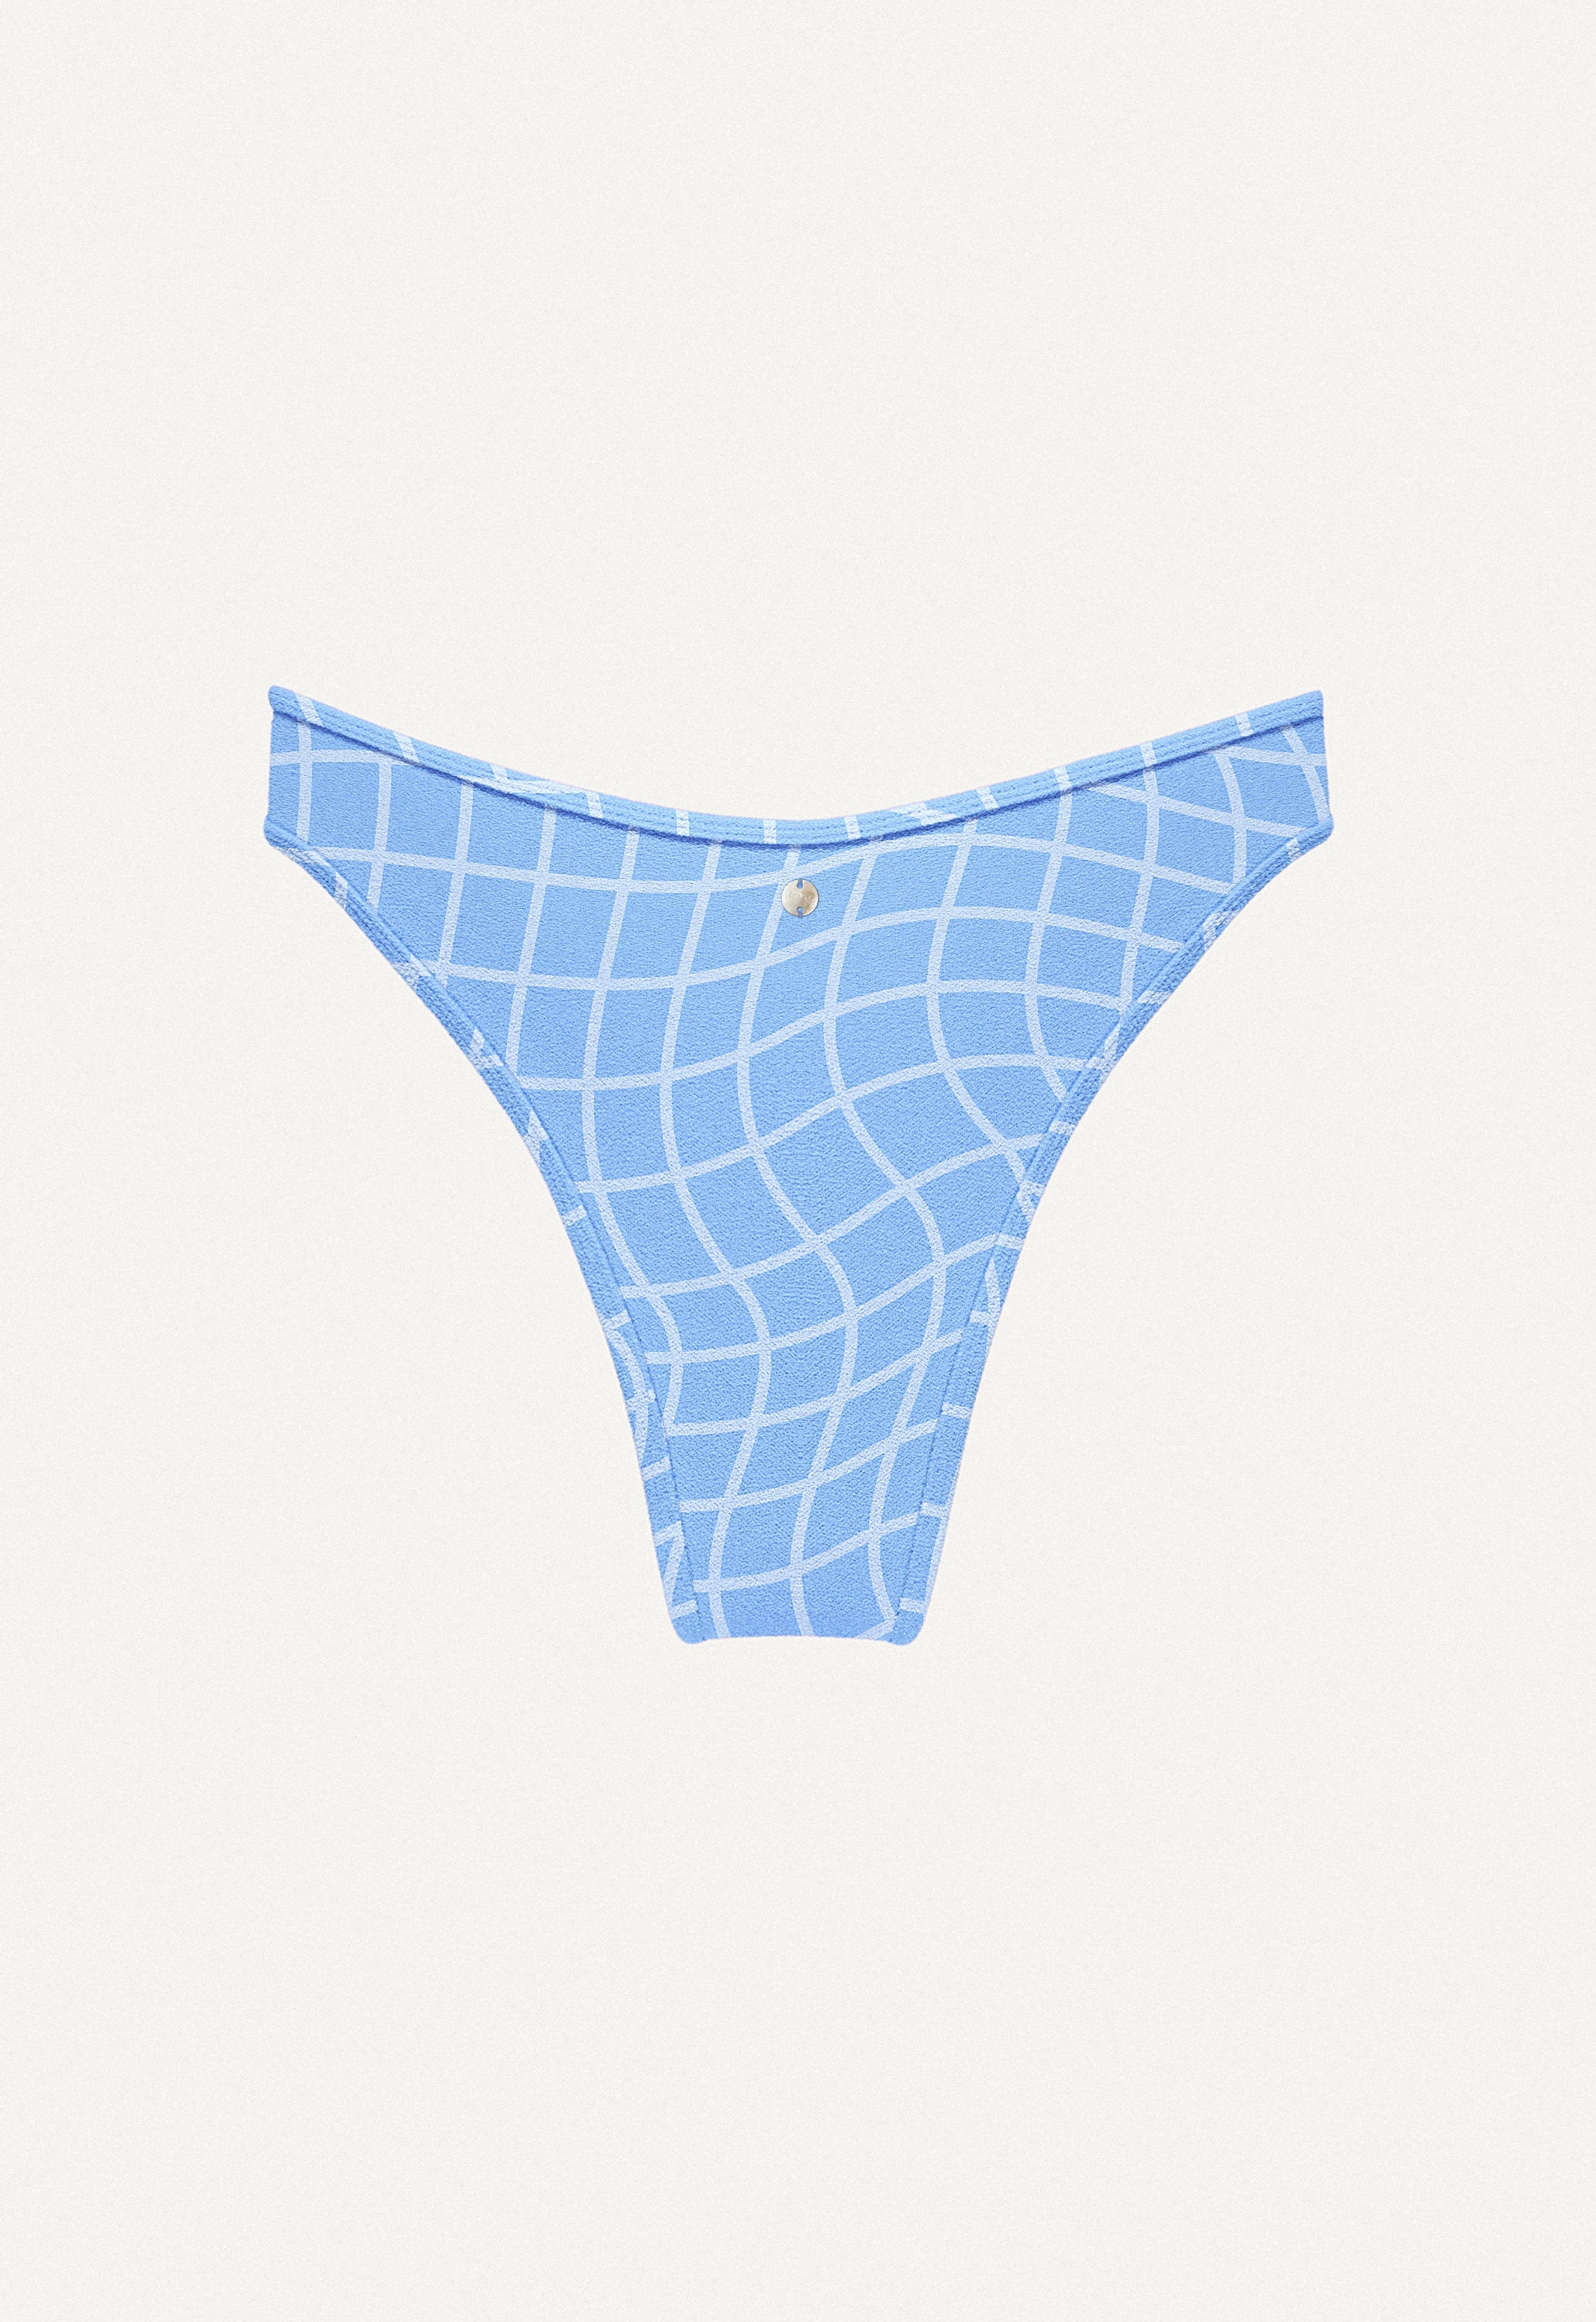 Bikini Bottom "Notos" in blue pool print terry